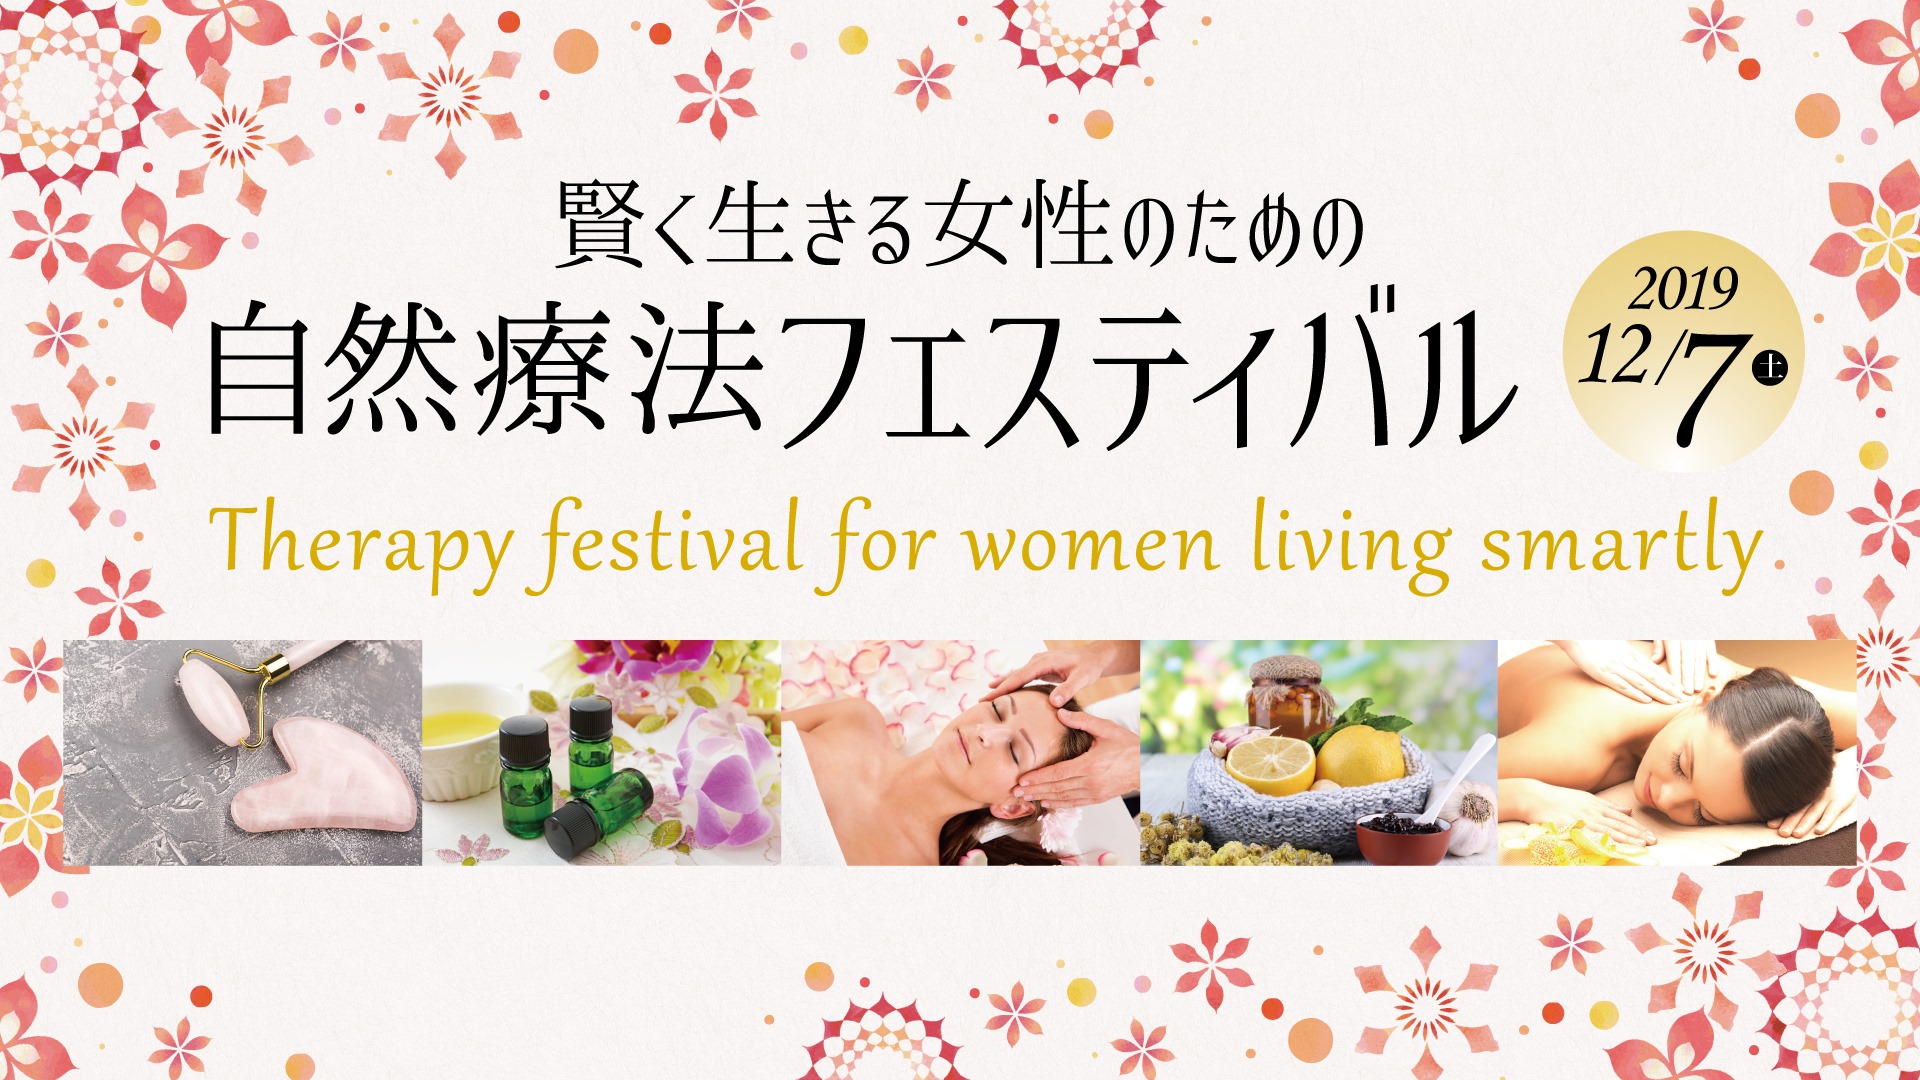 イベント出店情報：賢く生きる女性のための自然療法フェスティバル